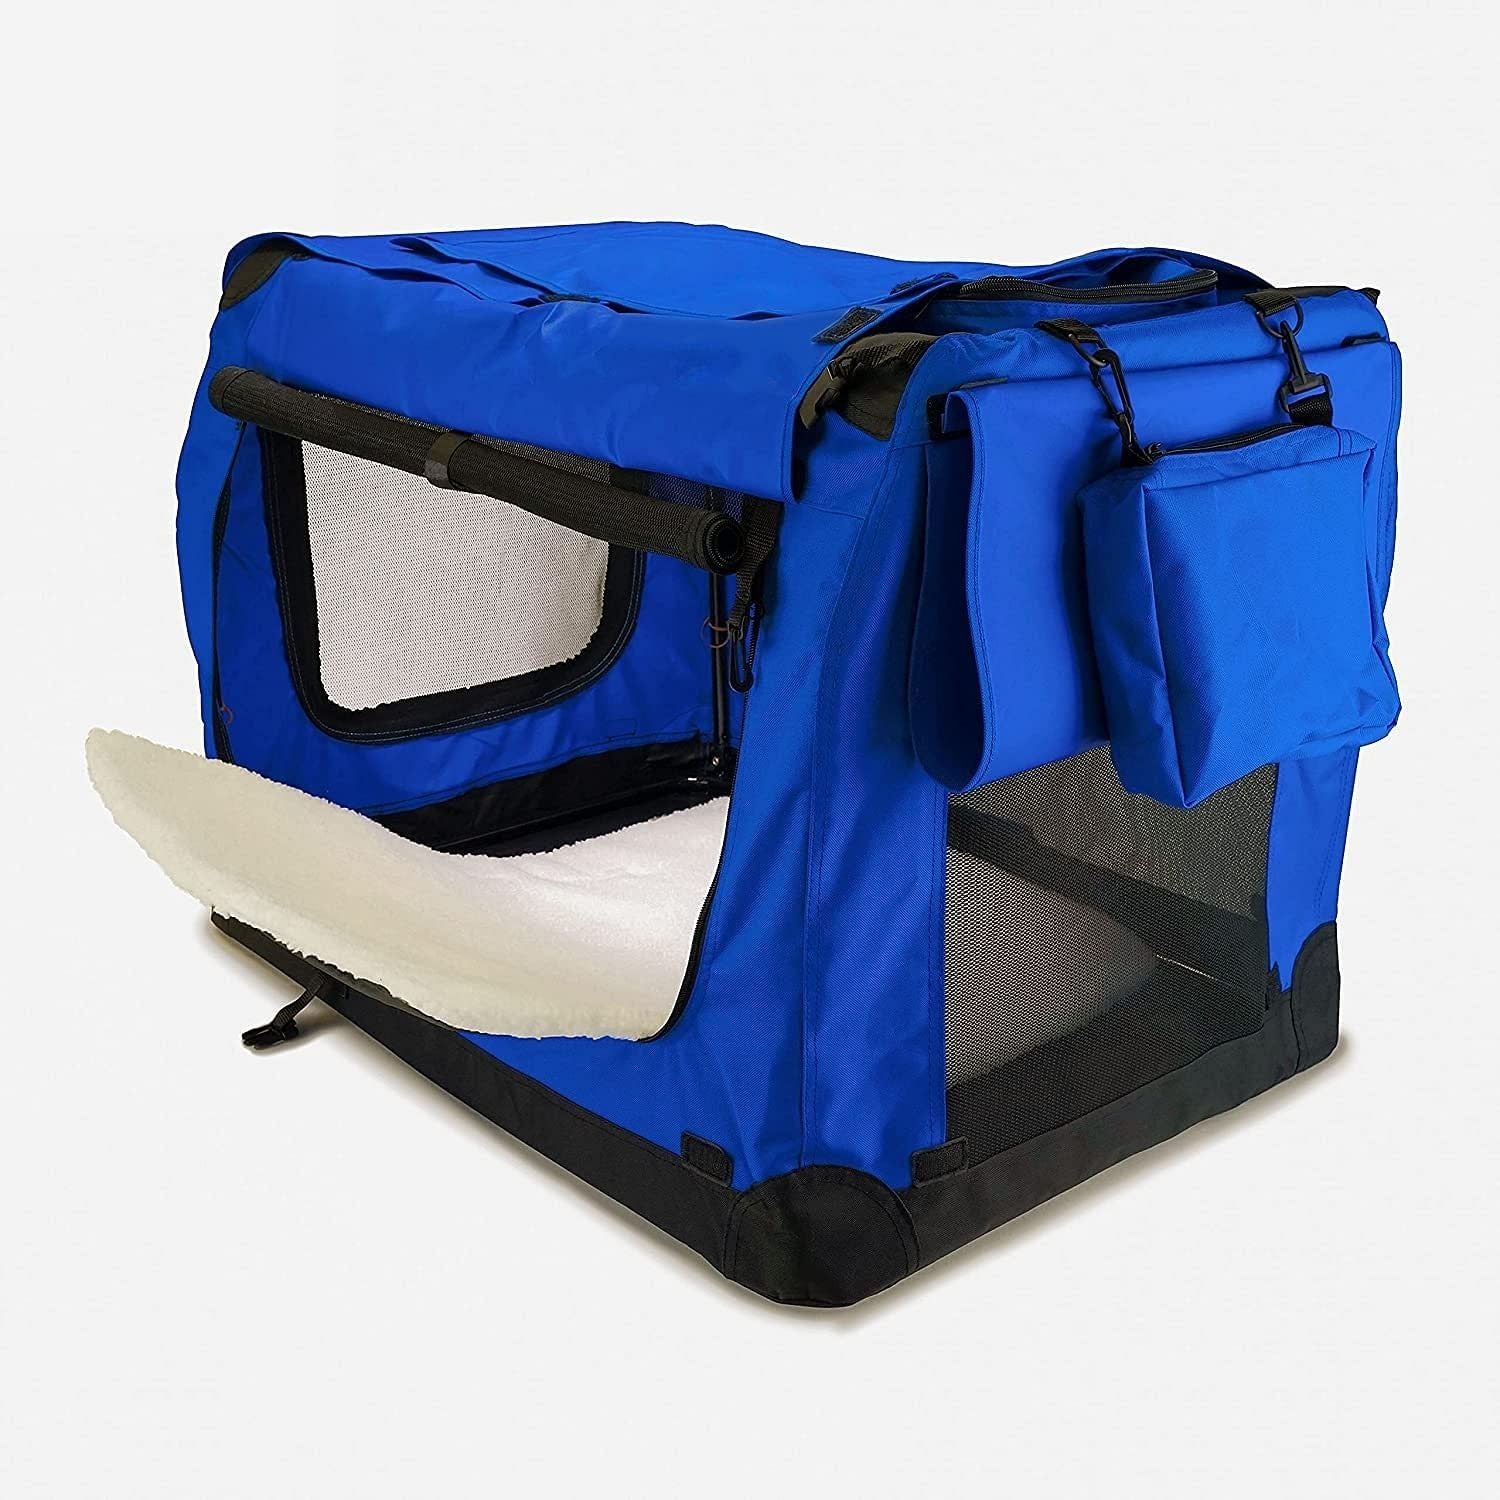 FLOOFI Portable Pet Carrier-Model 1-XL Size (Blue)